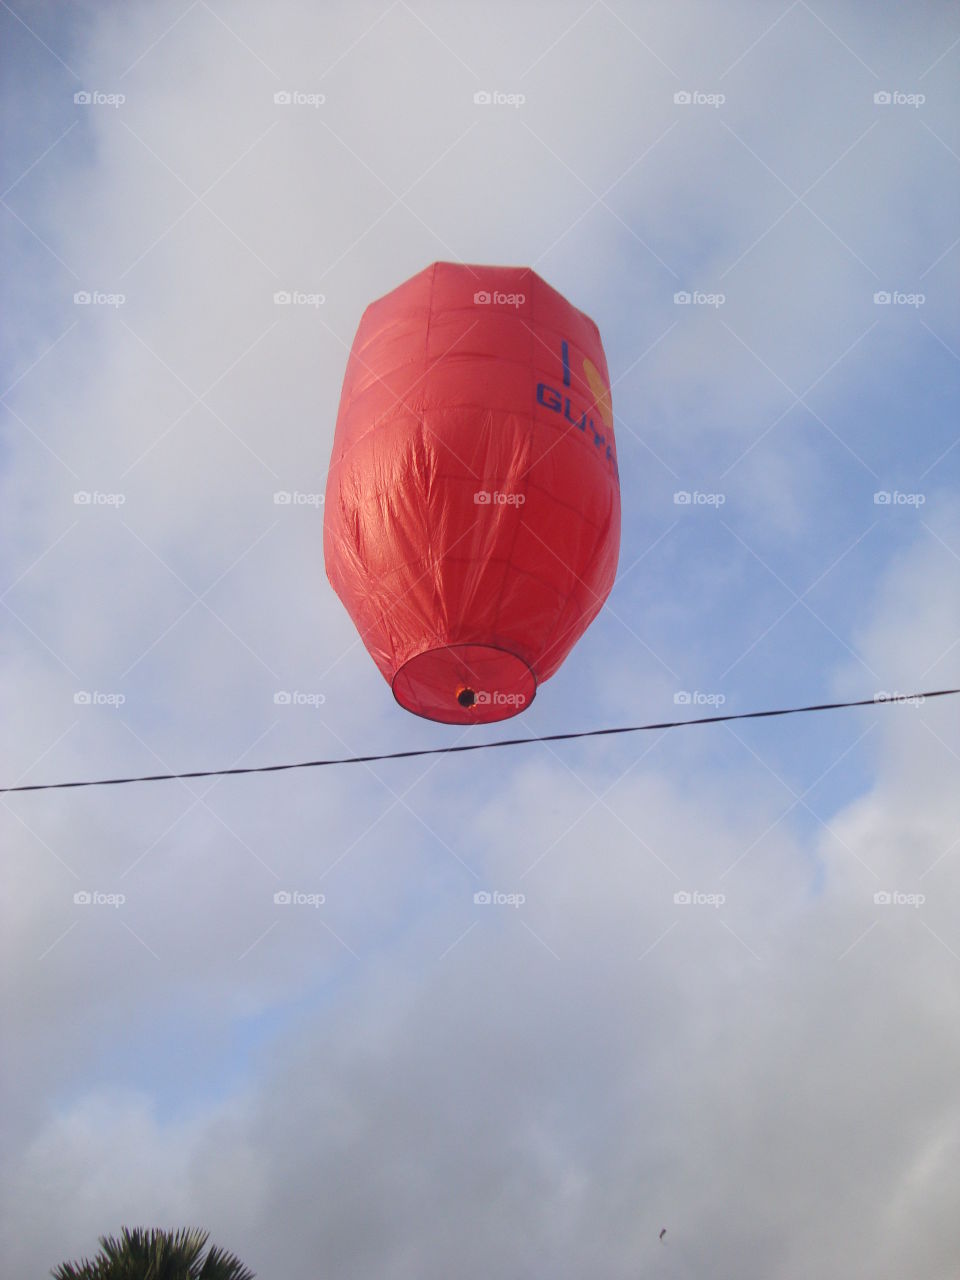 Balloon, Sky, Air, No Person, Aircraft